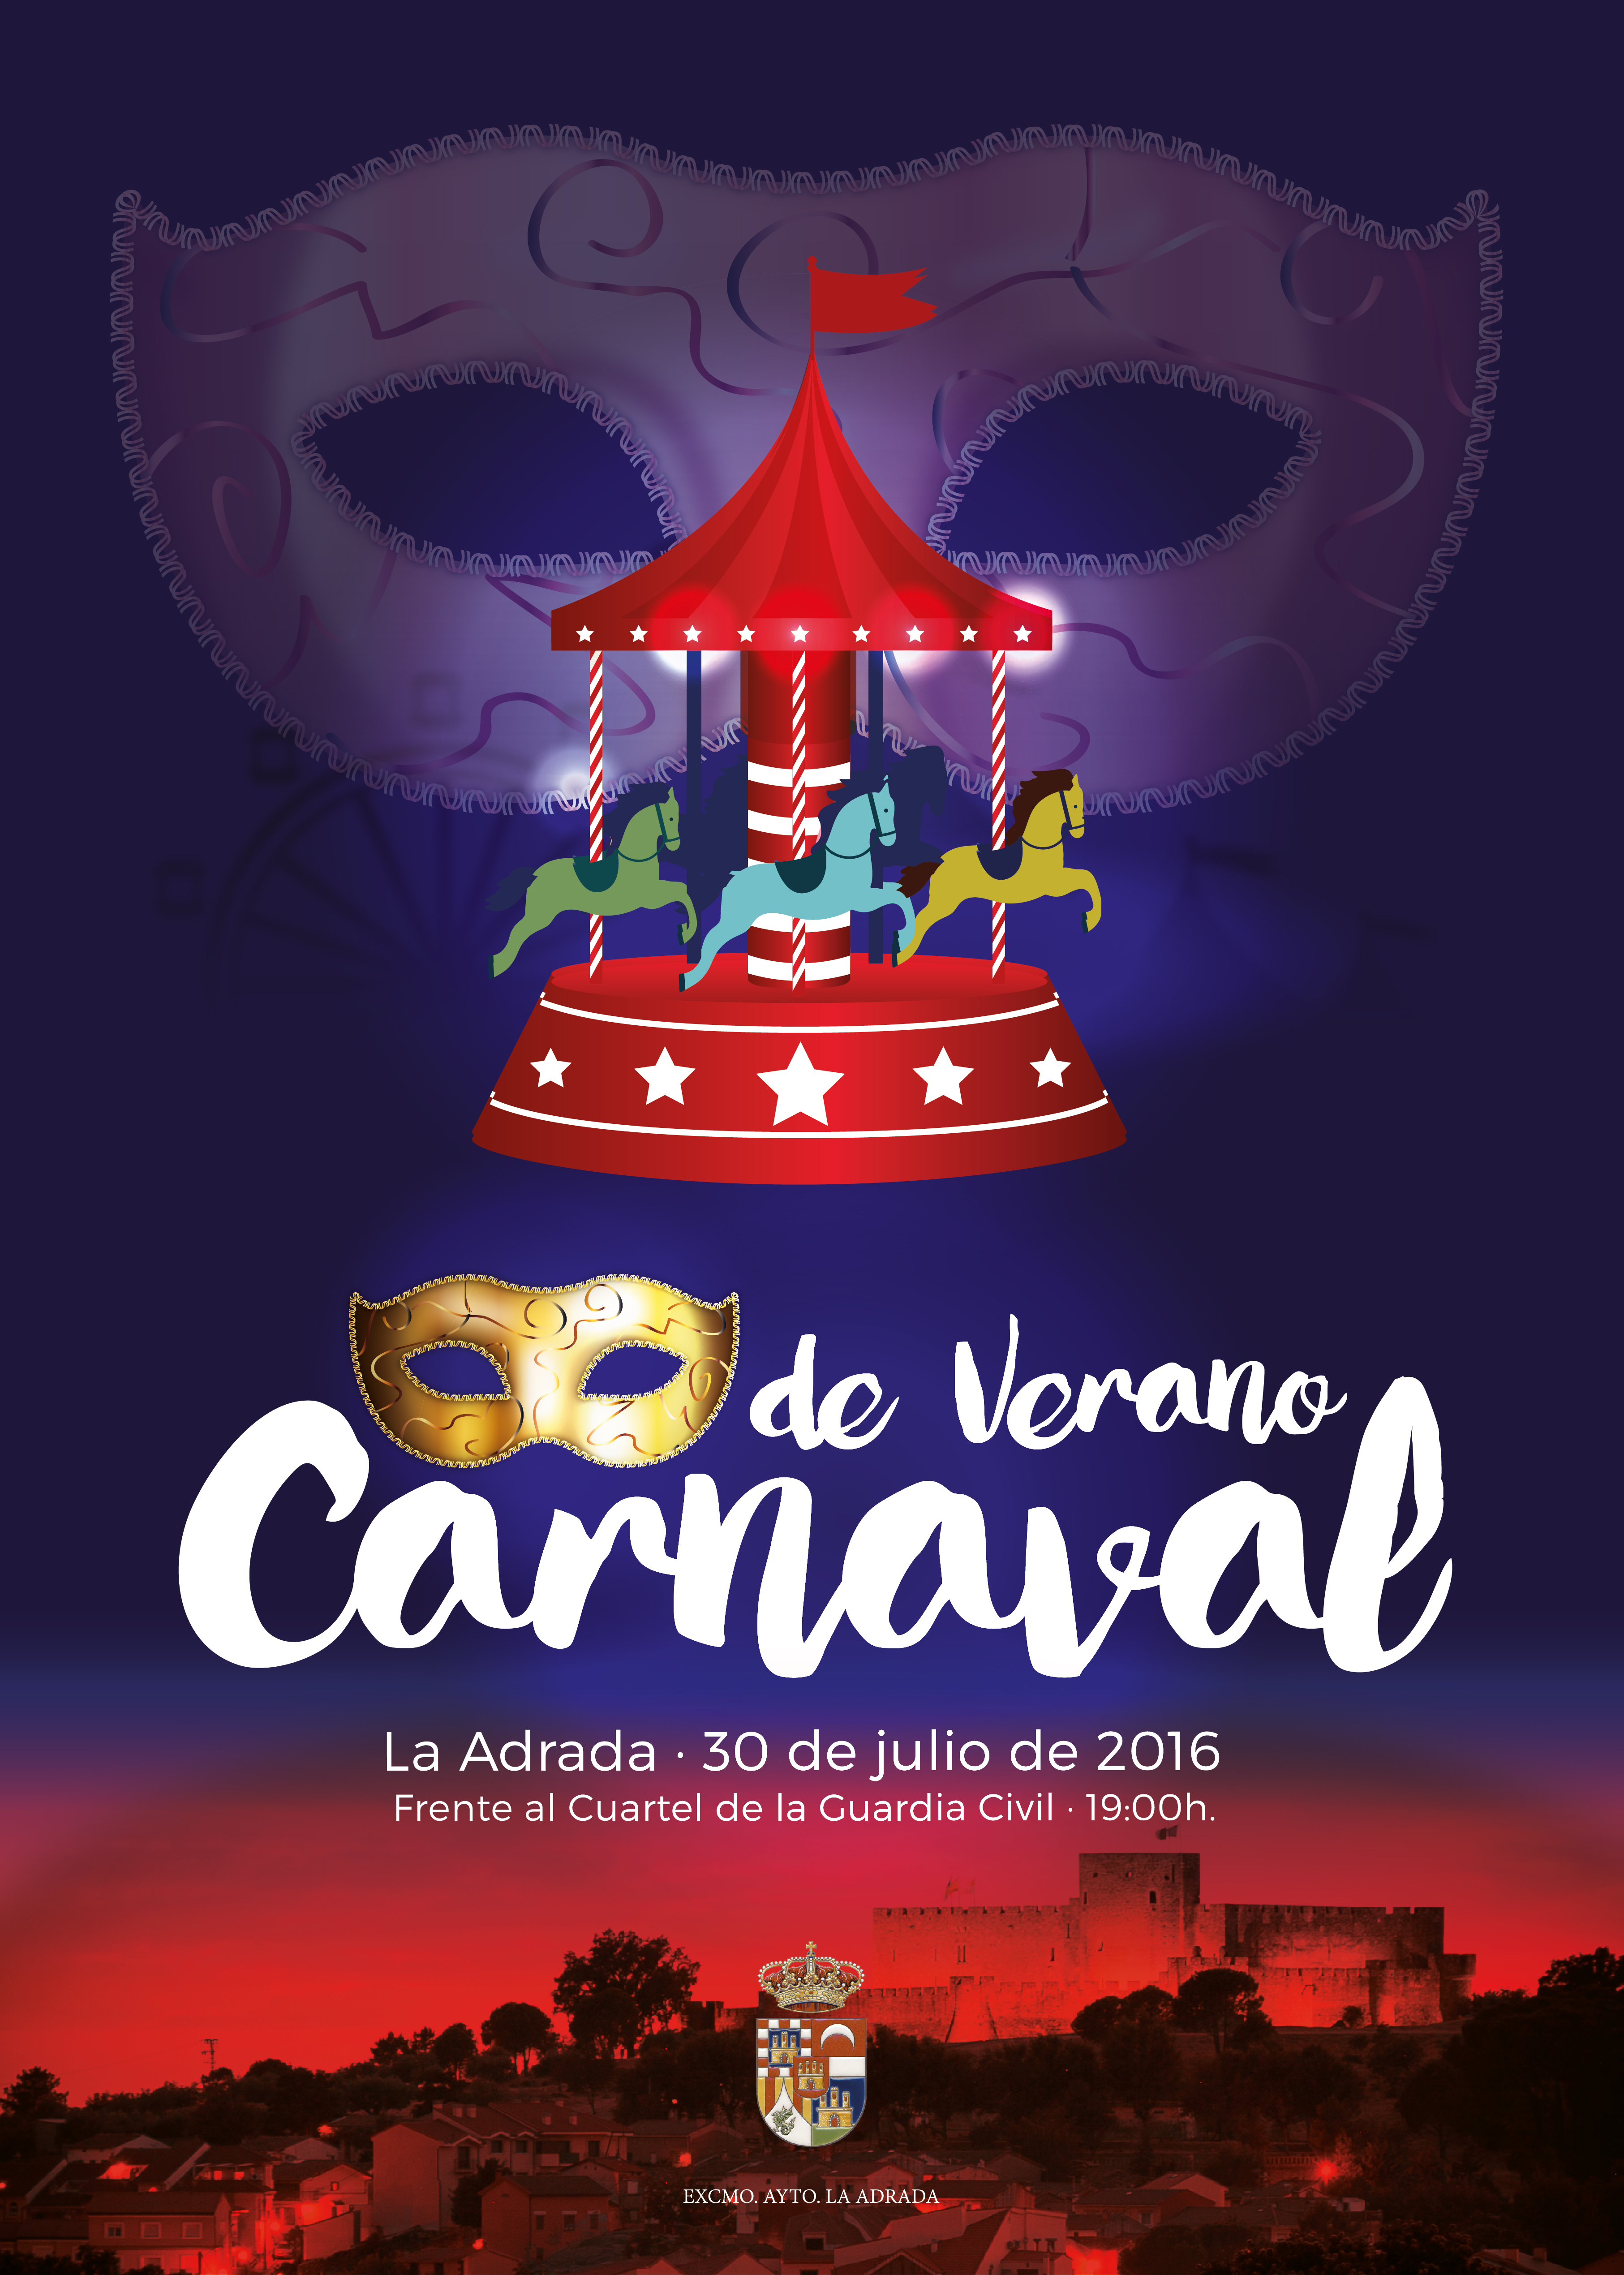 Carnaval de verano 2016